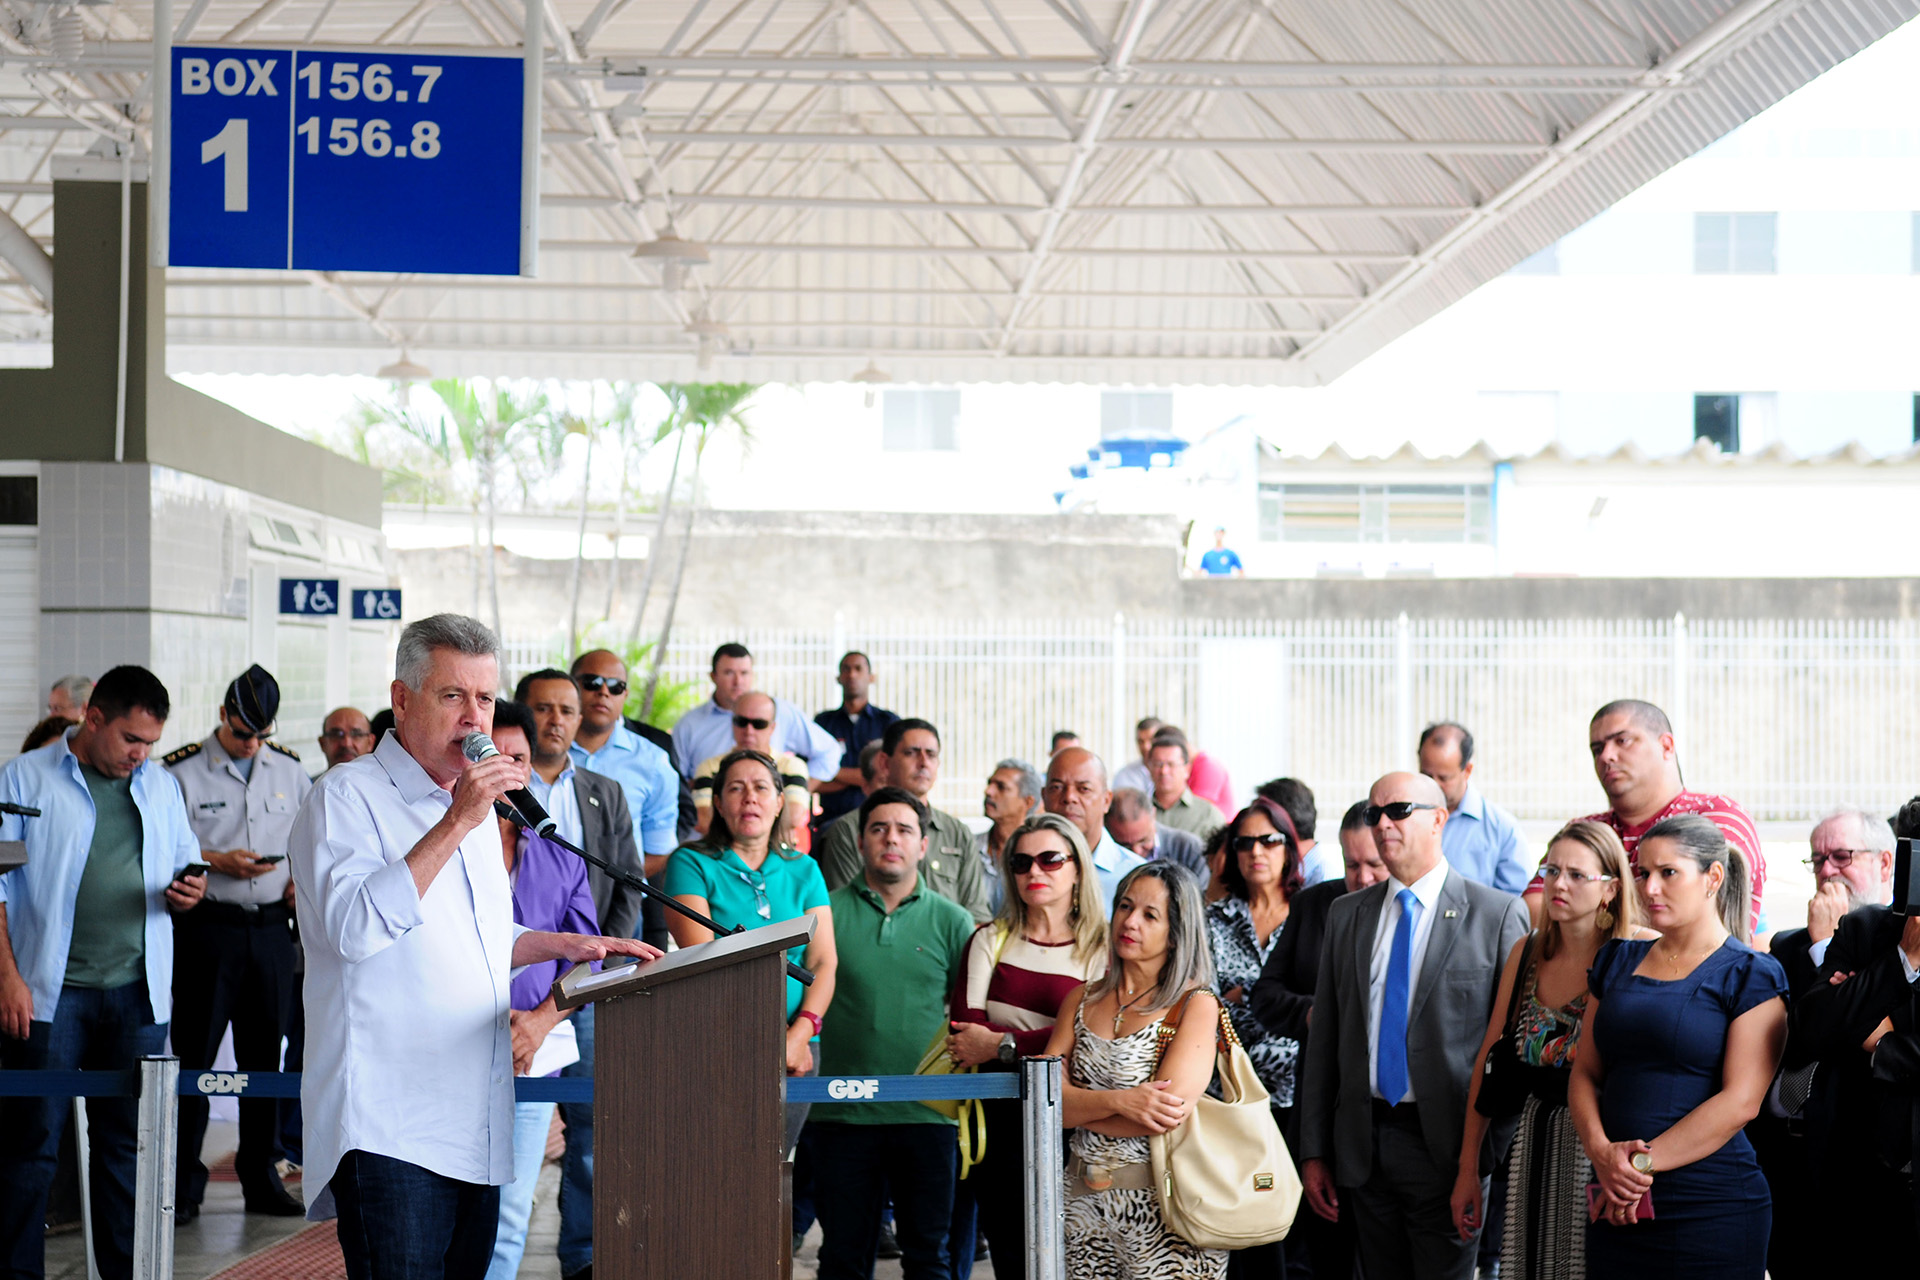 O governador de Brasília, Rodrigo Rollemberg, participou da entrega da plataforma, que faz parte do programa de mobilidade urbana Circula Brasília.